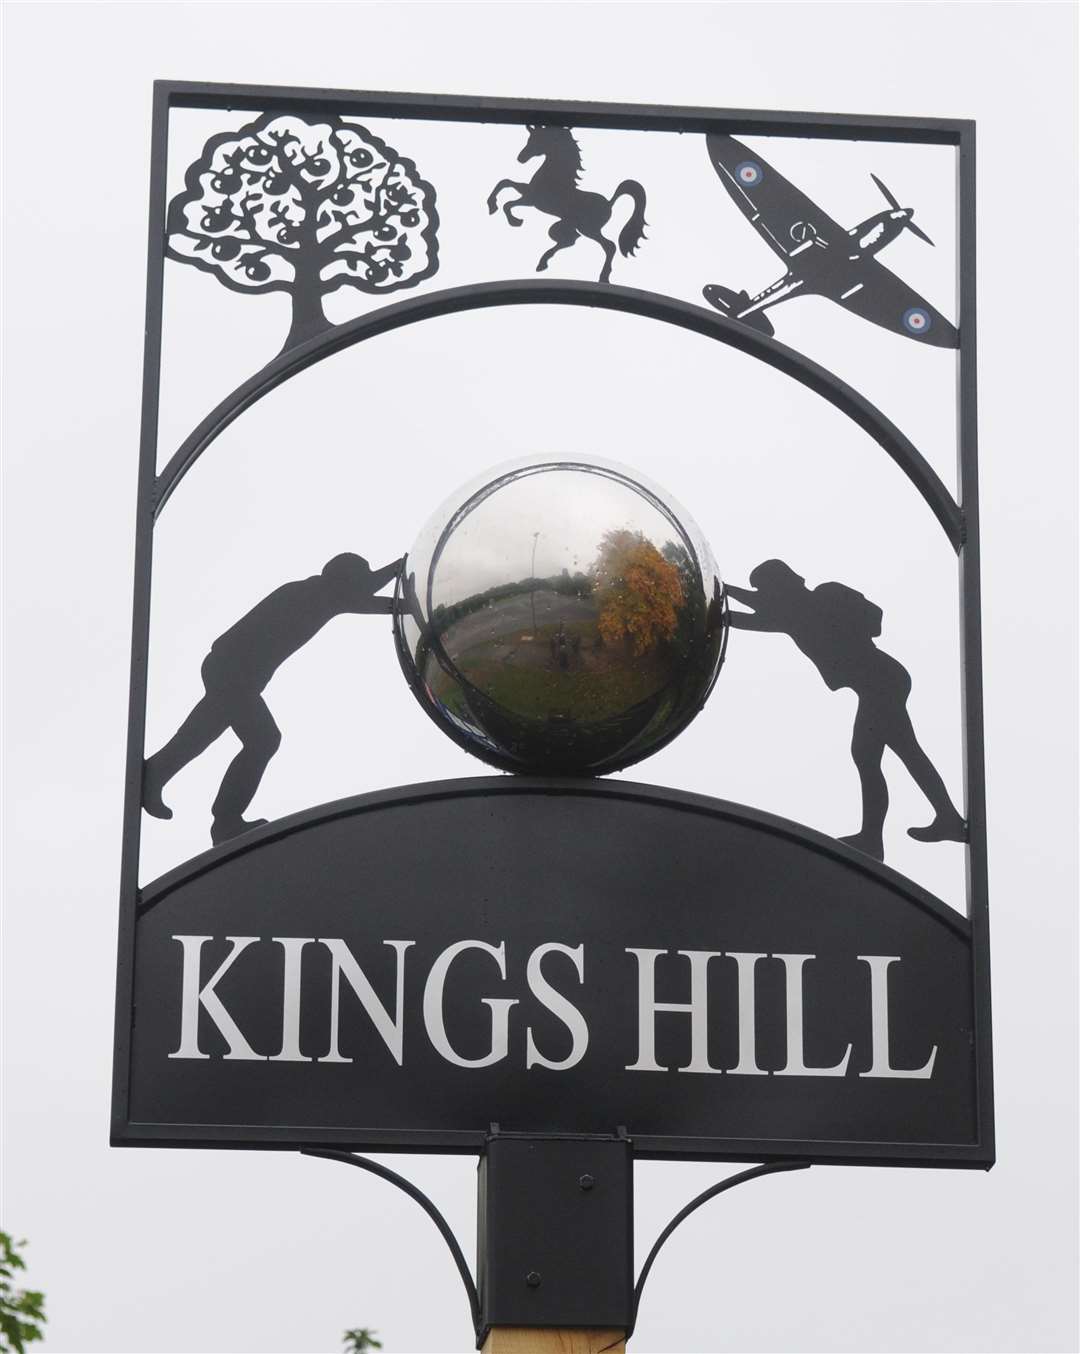 Kings Hill is suffering